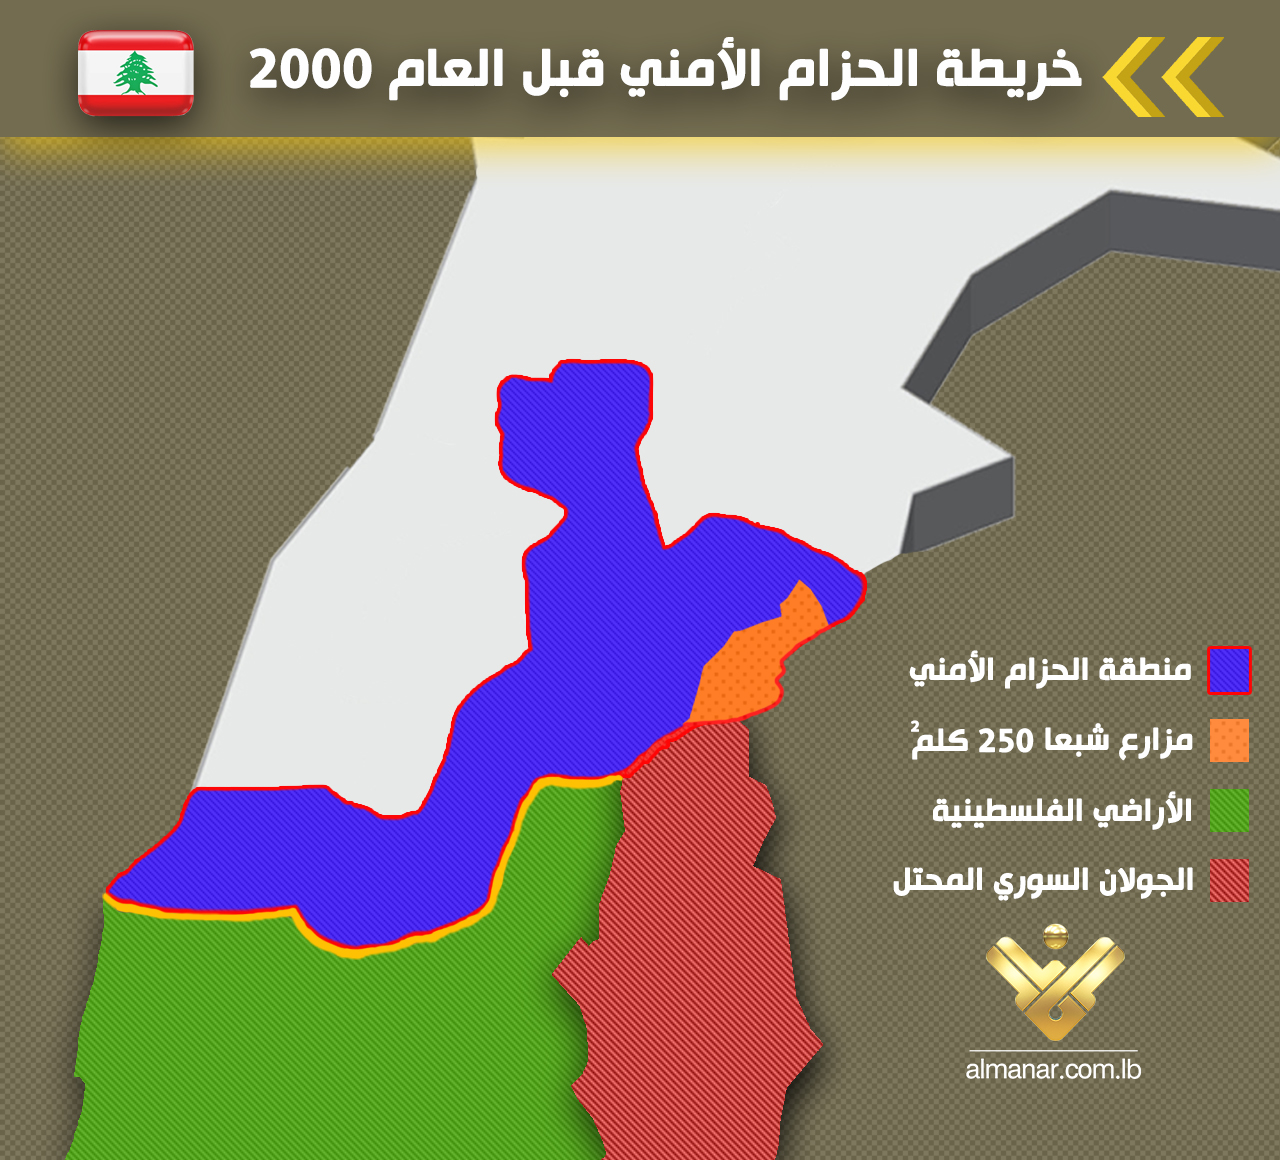 خارطة تُظهر منطقة الحزام الأمني في جنوب لبنان التي تحررت في العام 2000